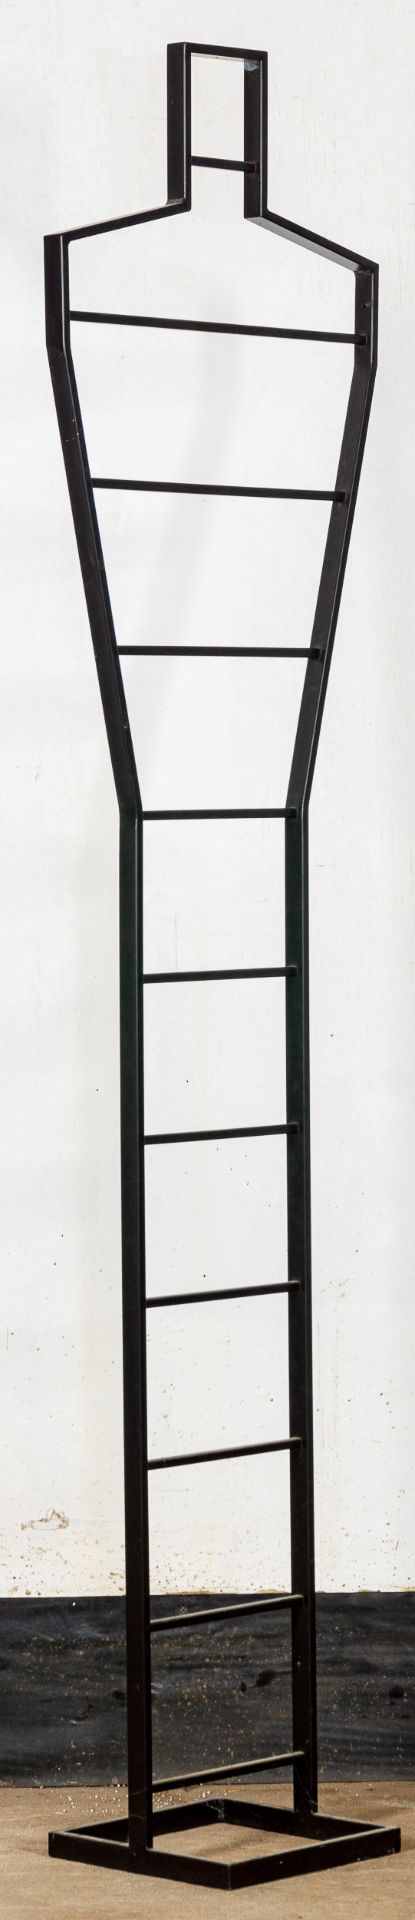 Kleiderständer, mattschwarz lackiertes Metallgestell, 1980/90er Jahre, Höhe ca. 181 cm. Guter Erhal - Bild 3 aus 3